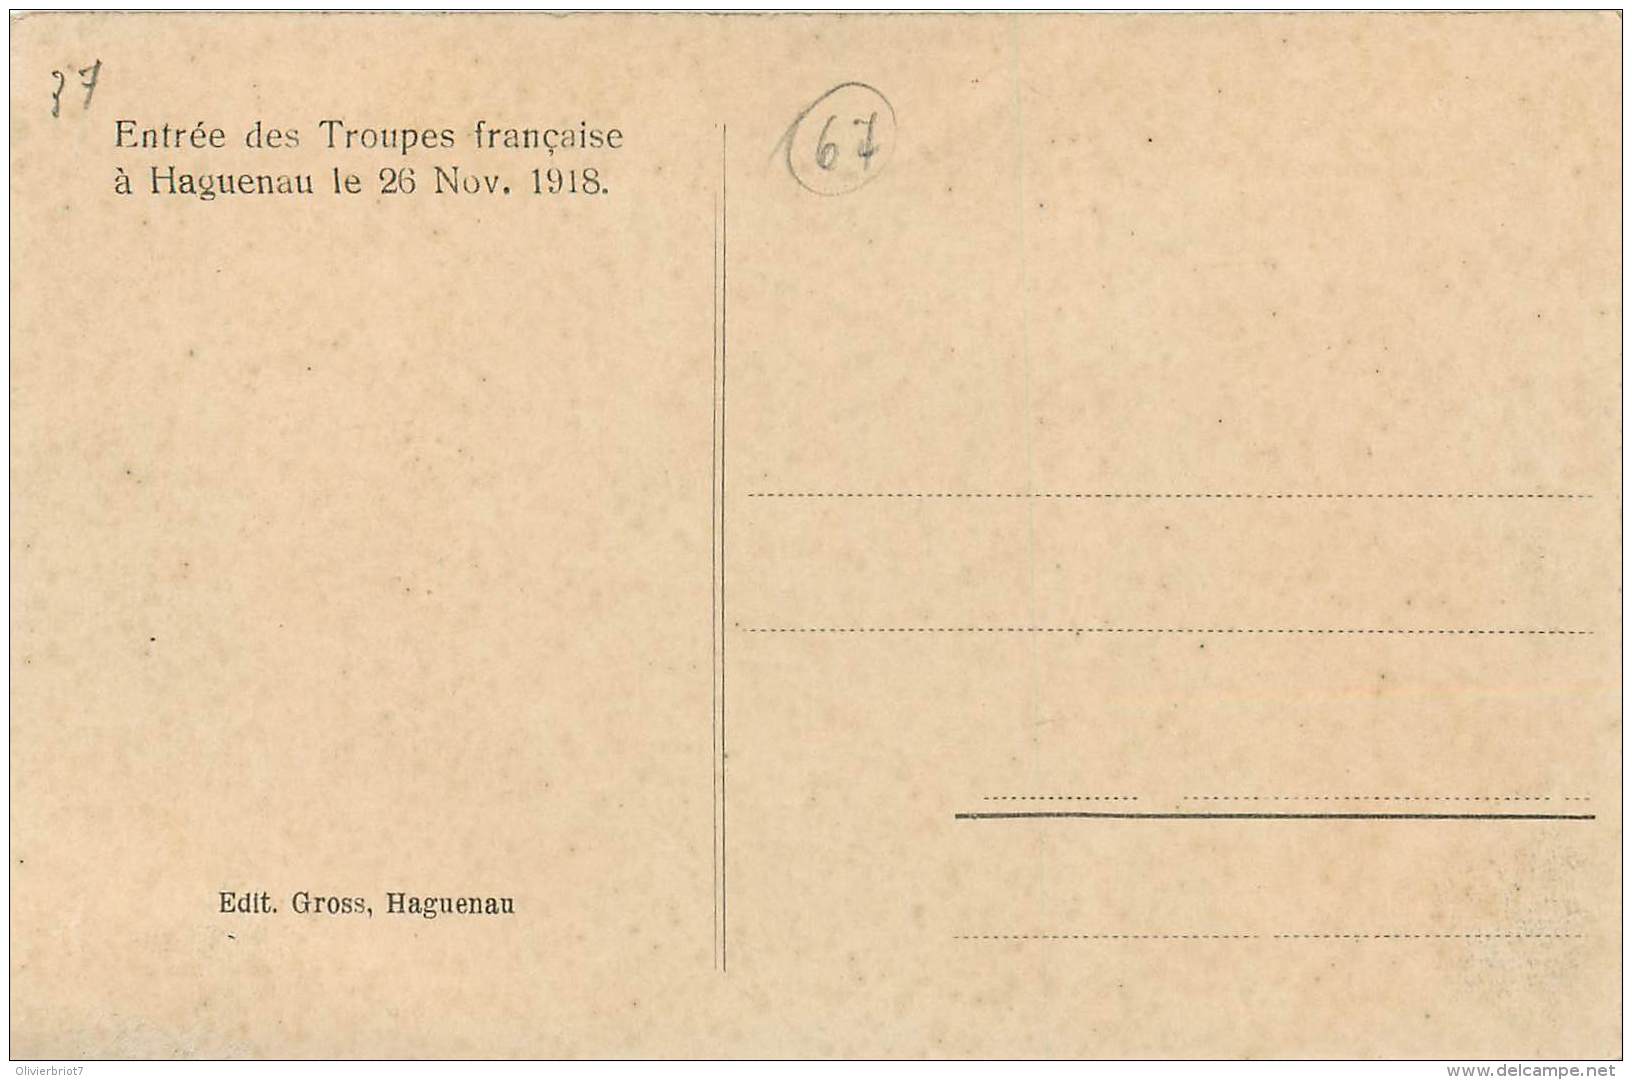 France - 67 - Haguenau - Entrée Des Troupes Française Le 26 Nov. 1918 - Haguenau